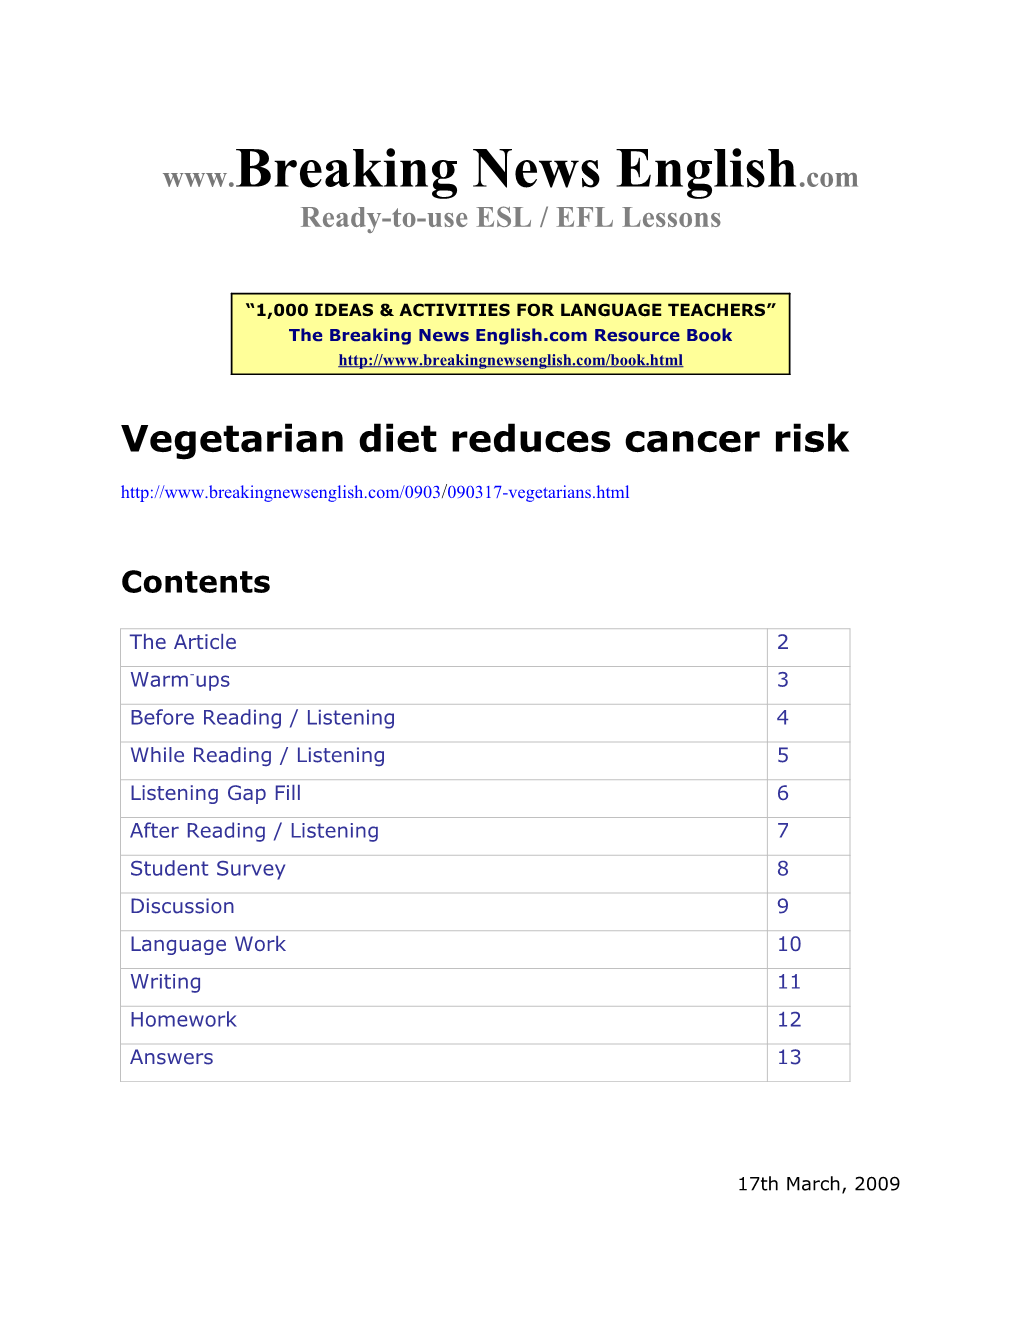 ESL Lesson: Vegetarian Diet Reduces Cancer Risk